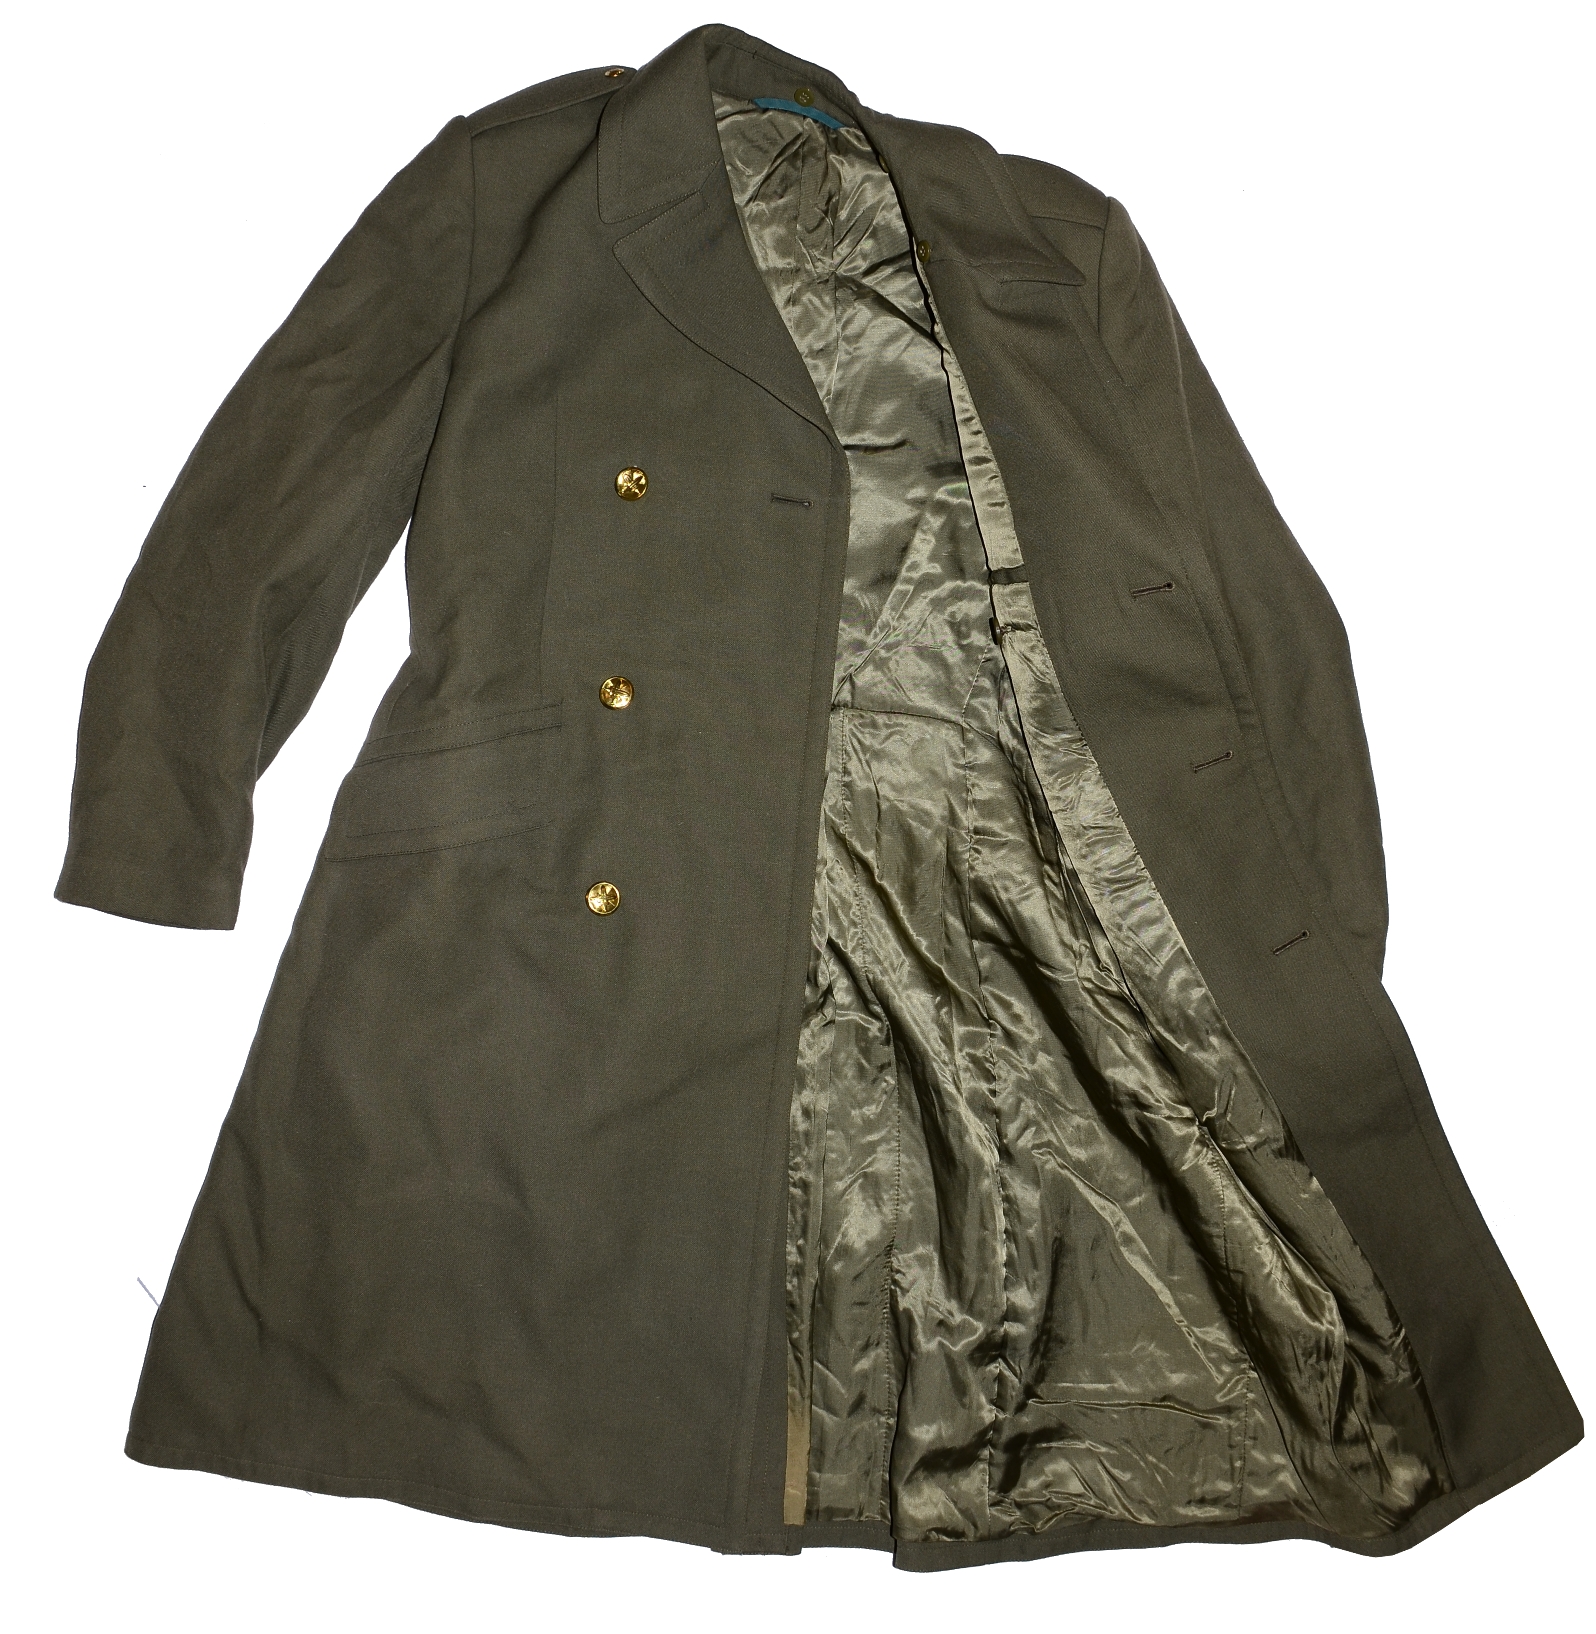 Kabát  zelený vycházkový zimní , plášť ČSLA, AČR